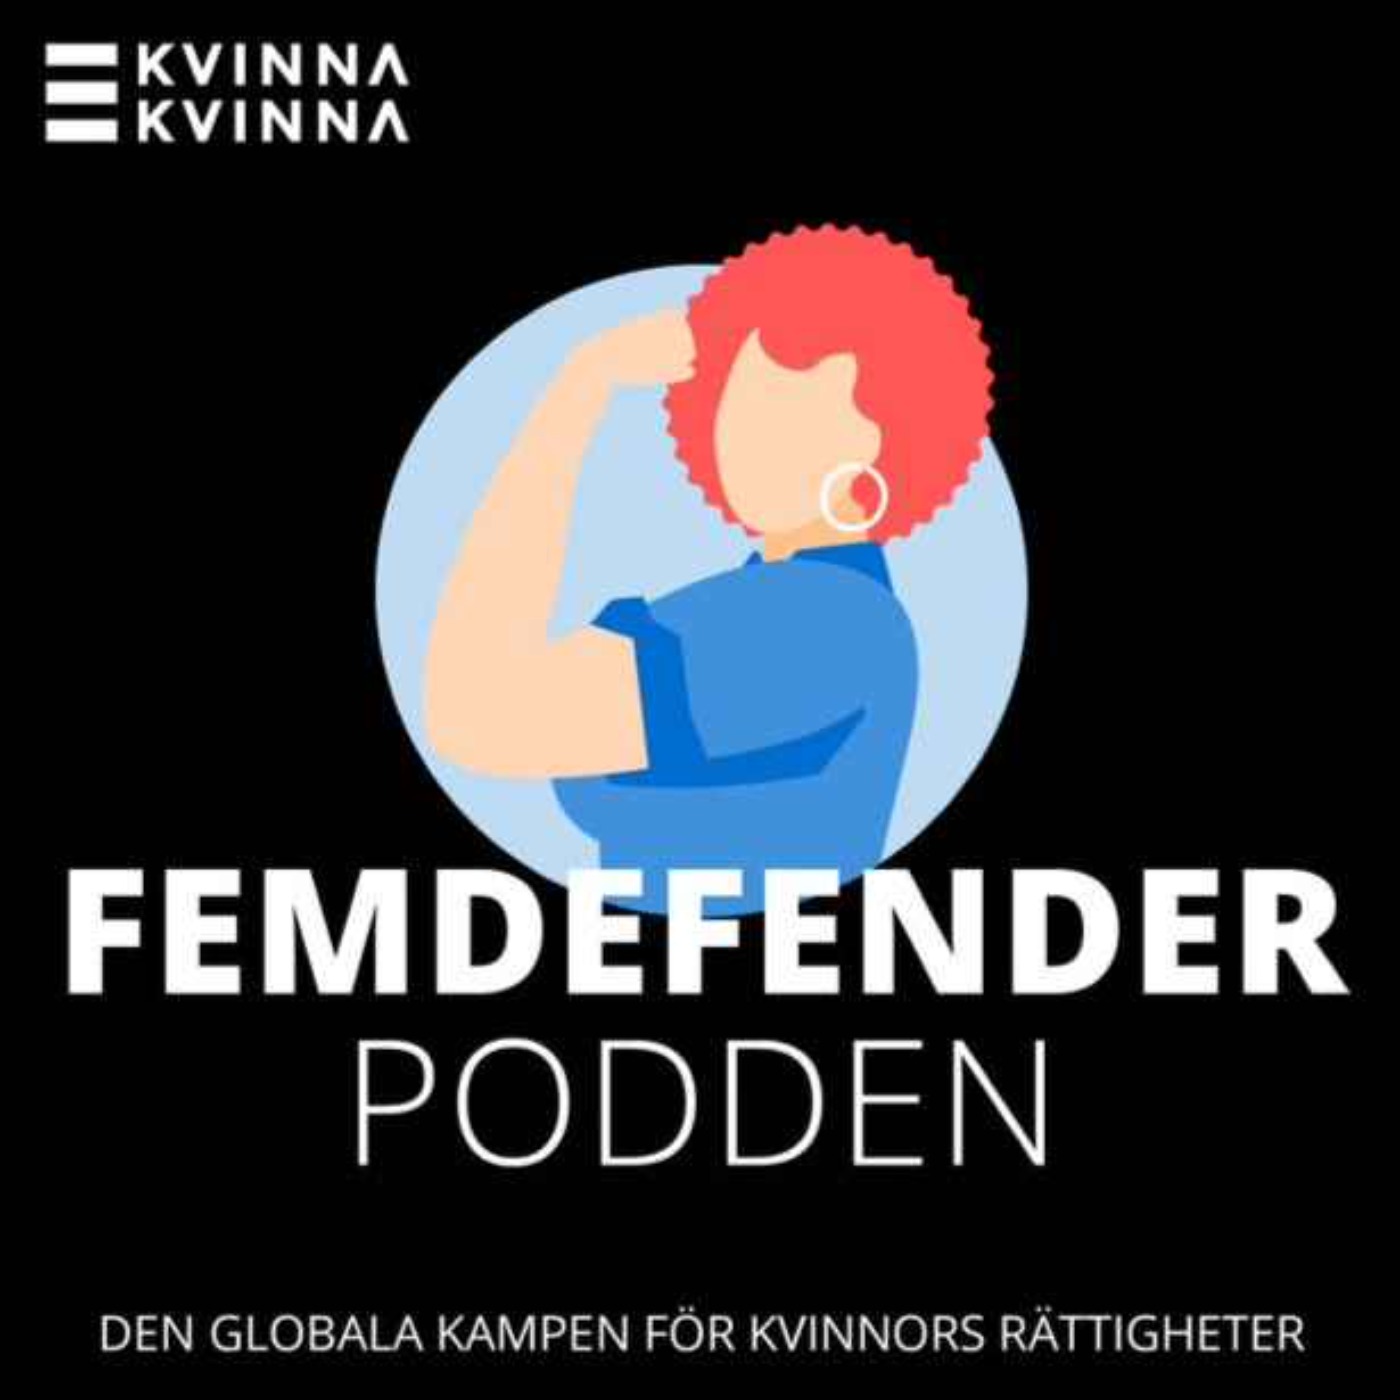 Avsnitt 4: Kvinnors kamp - vad gör Sverige när det blåser kallt?